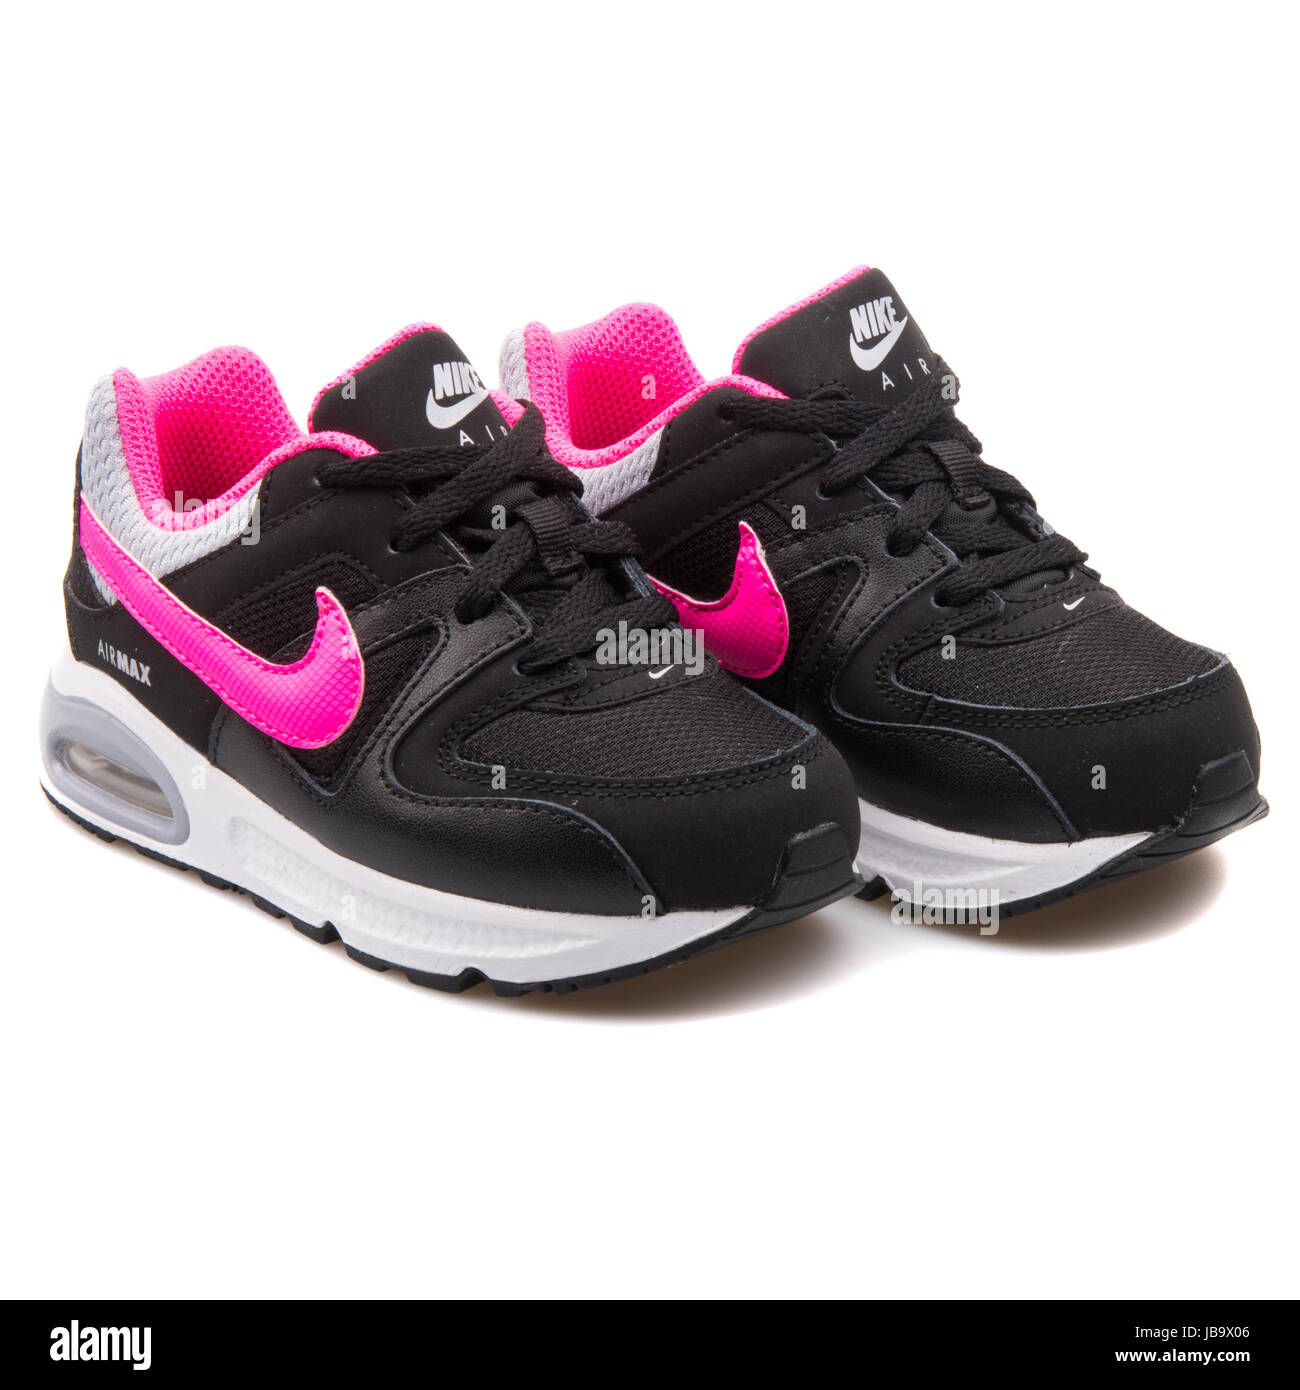 Nike Air (TD) Negro y Rosa Kids zapatillas deportivas - 412232-065 Fotografía de stock - Alamy